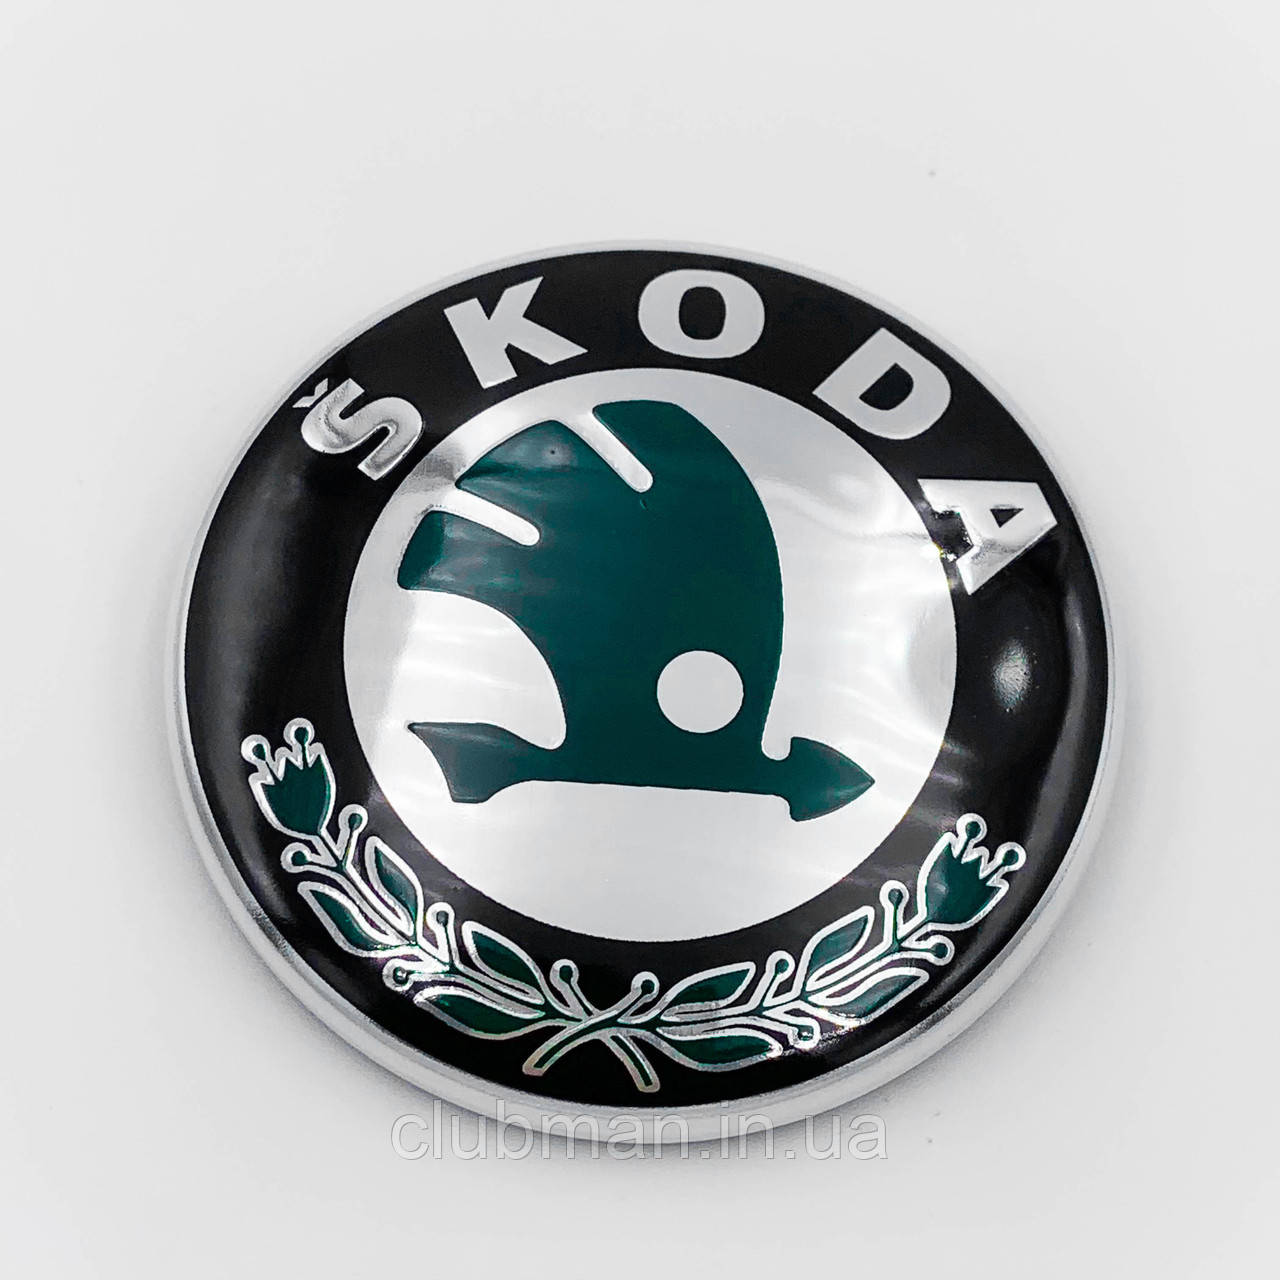 Емблема Skoda (Шкода) 79 мм значок Octavia, Fabia, Rapid, Superb